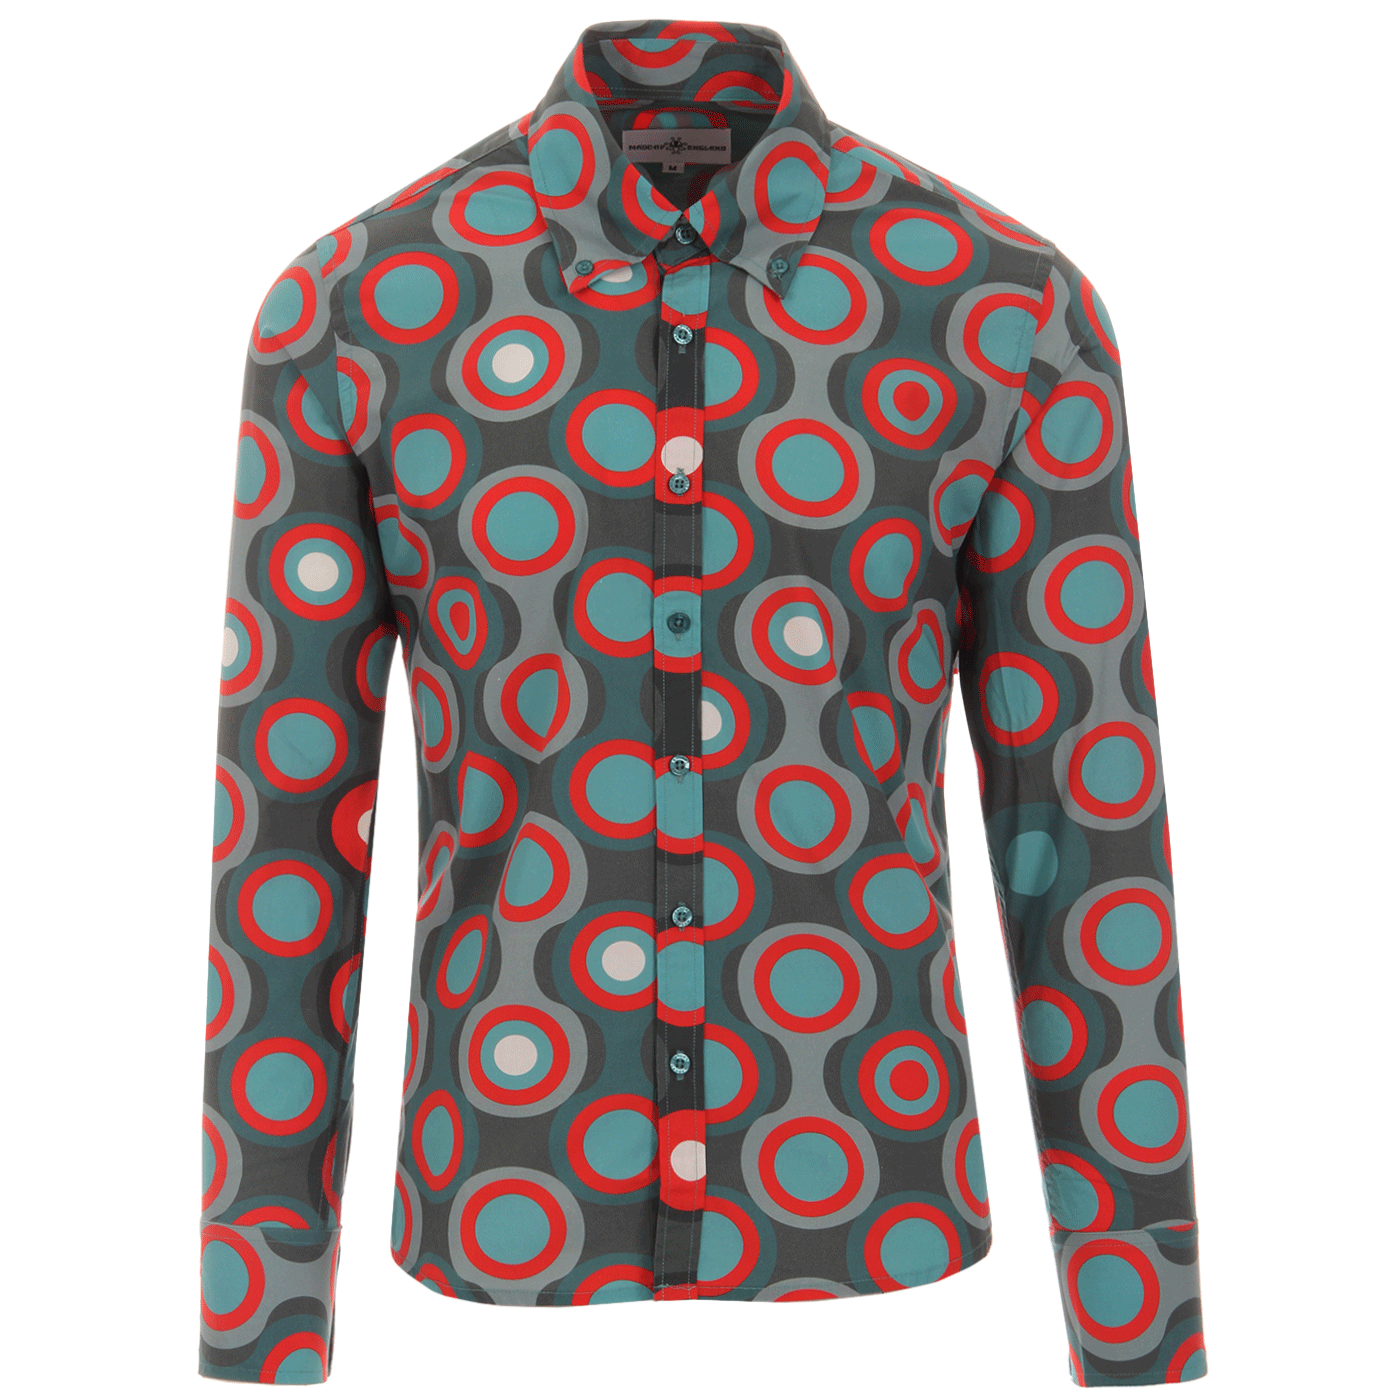 Trip Circles MADCAP ENGLAND 1960s Mod Target Shirt